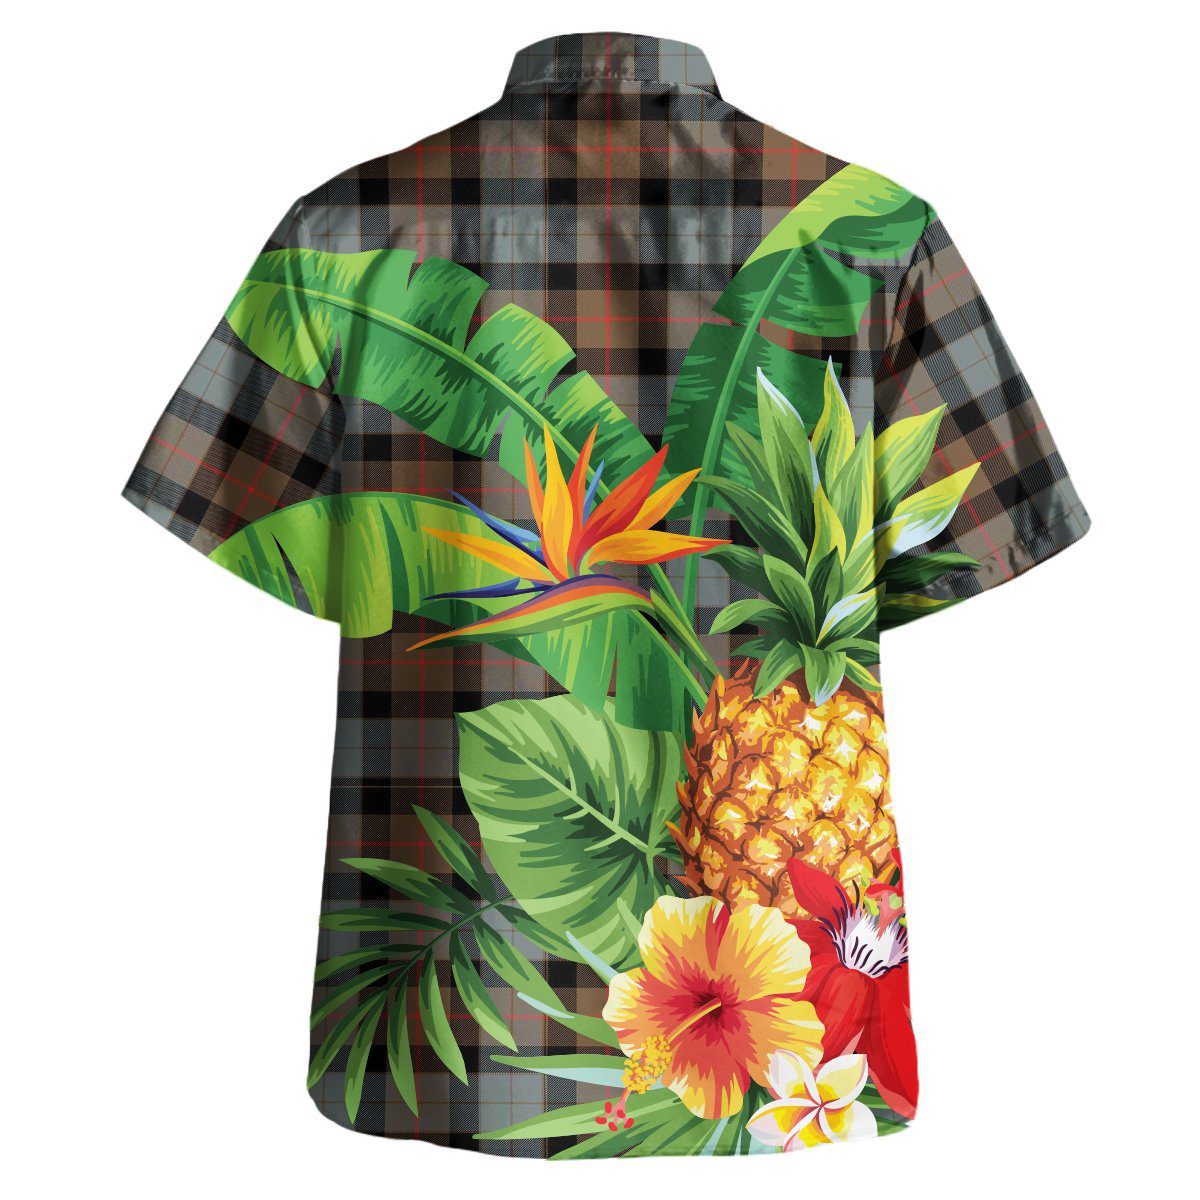 Gunn Weathered Tartan Aloha Shirt version 2